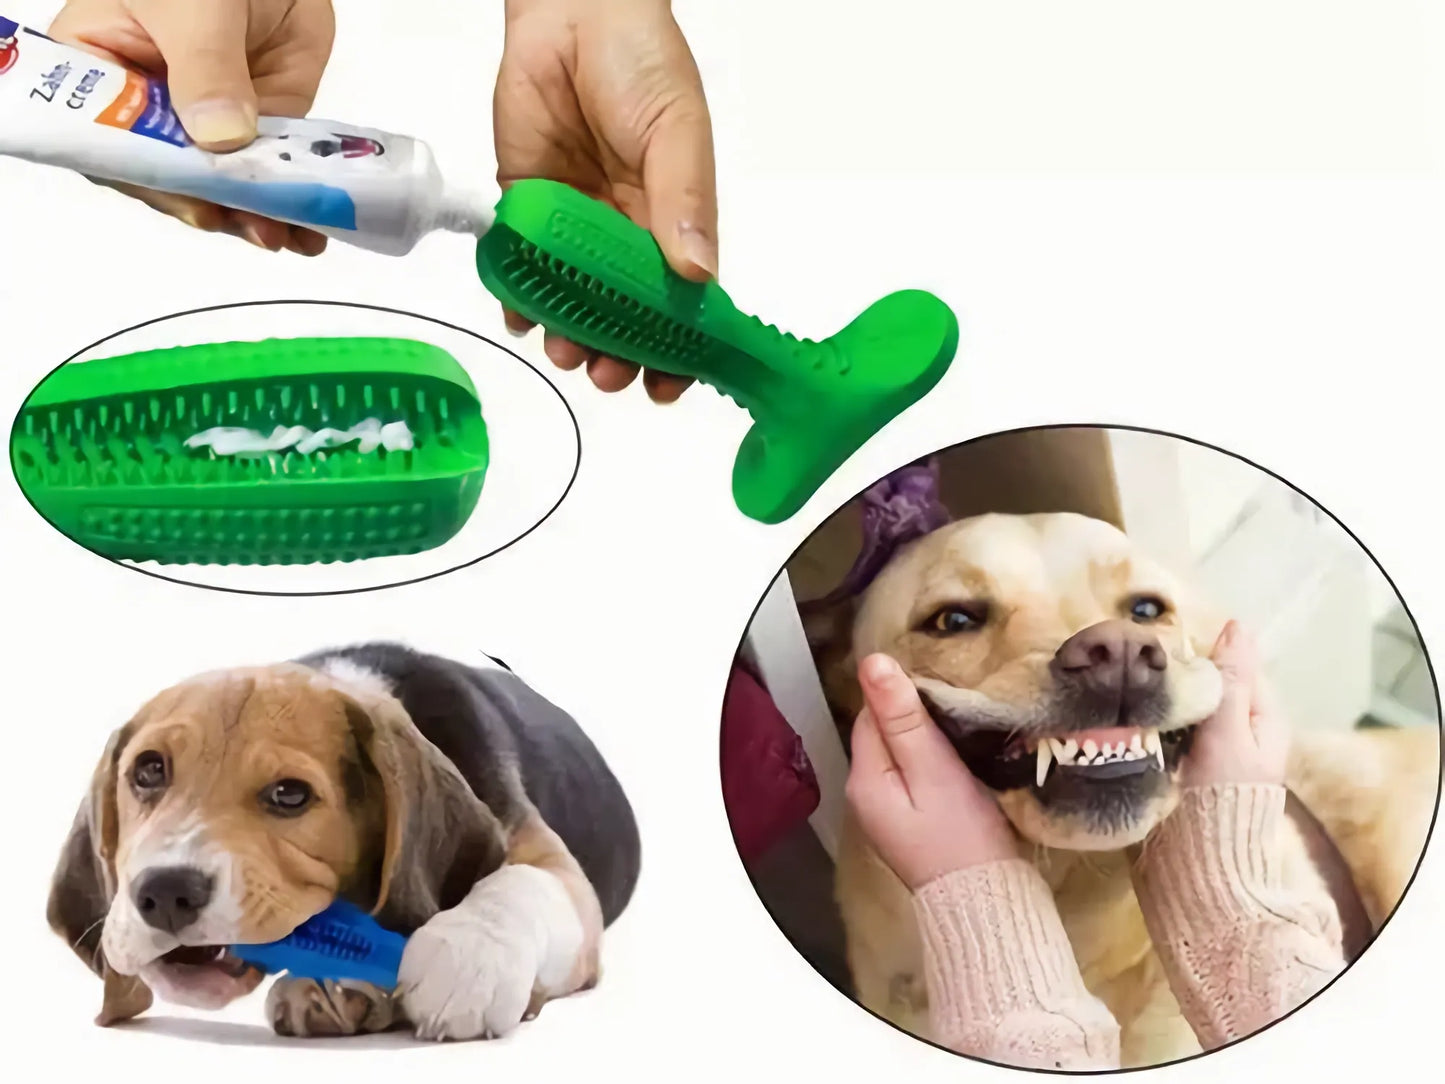 Juguete Cepillo De Dientes Para Perro Limpieza Dental - Teleproductos Bogotá 